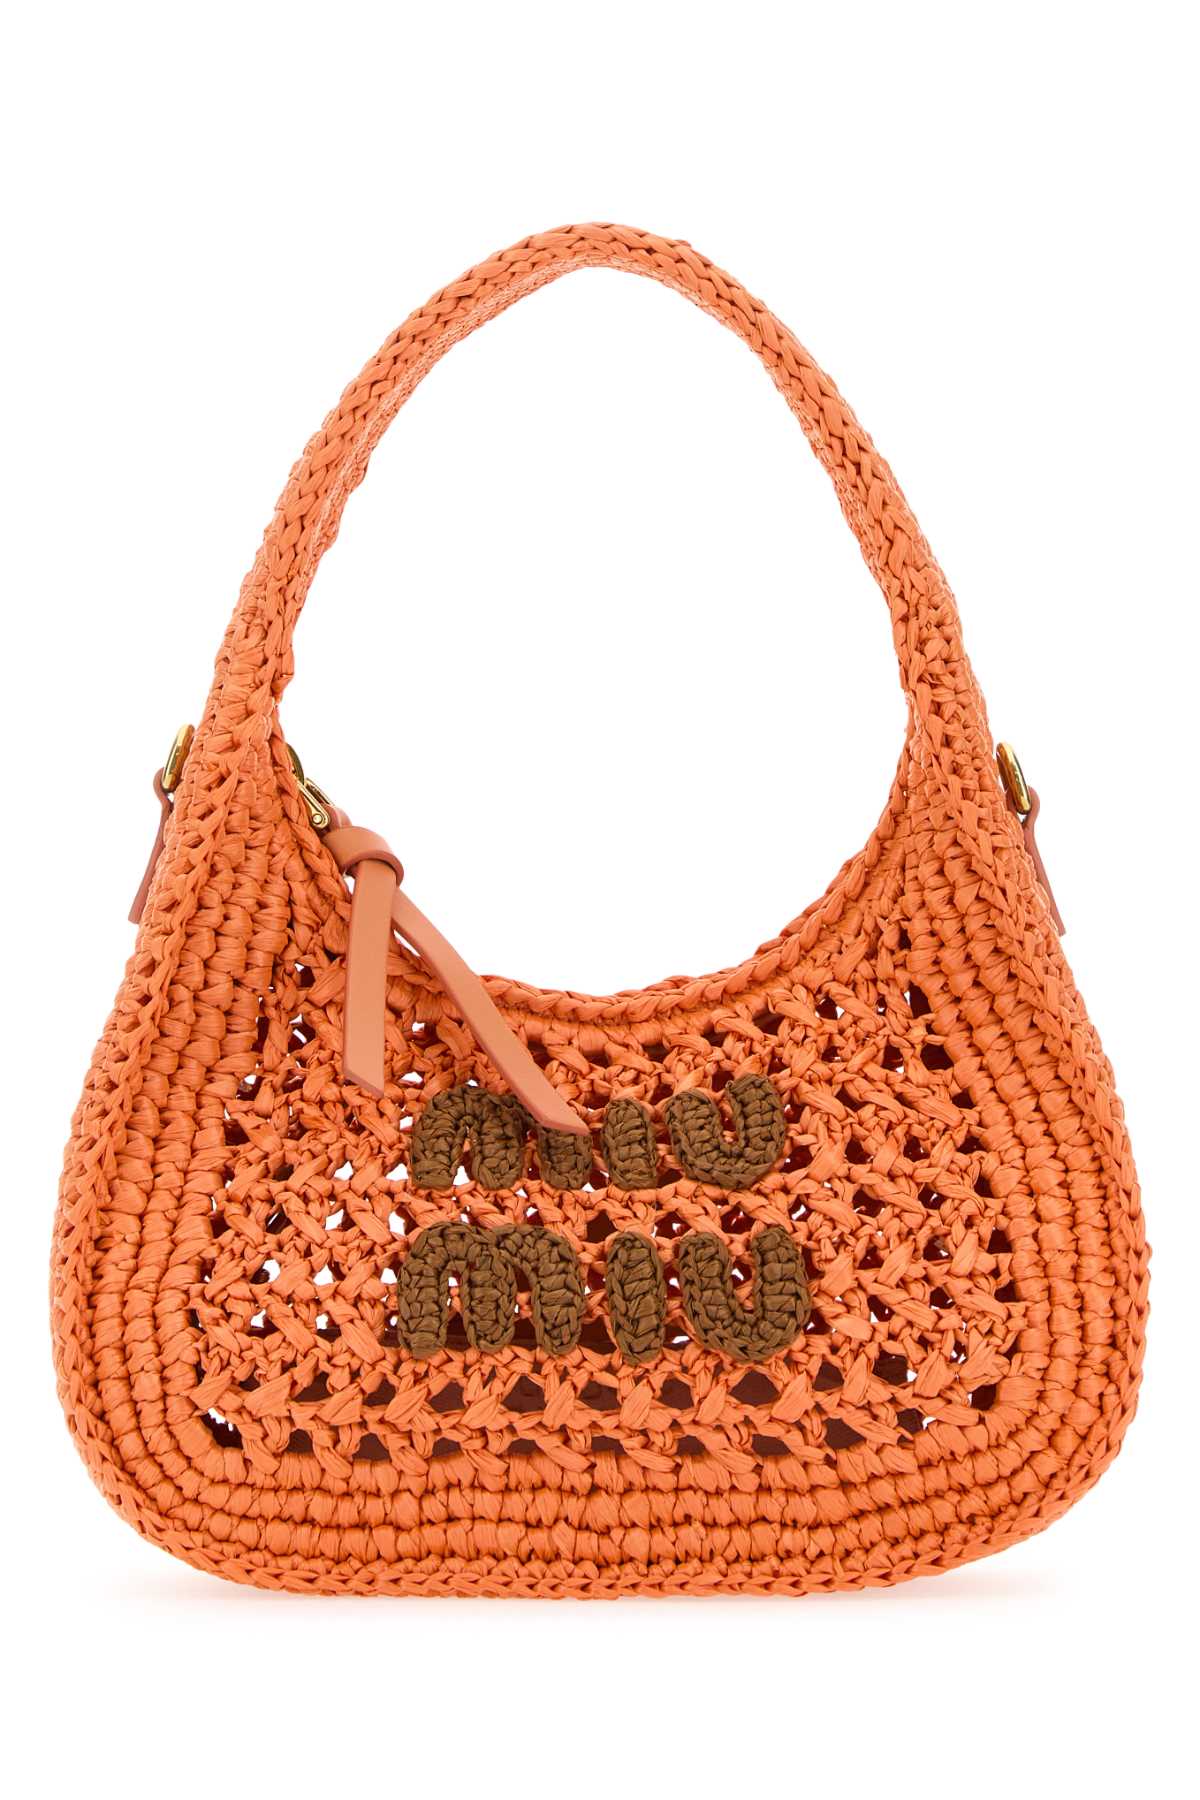 Miu Miu Orange Crochet Handbag In Tulipanocognac